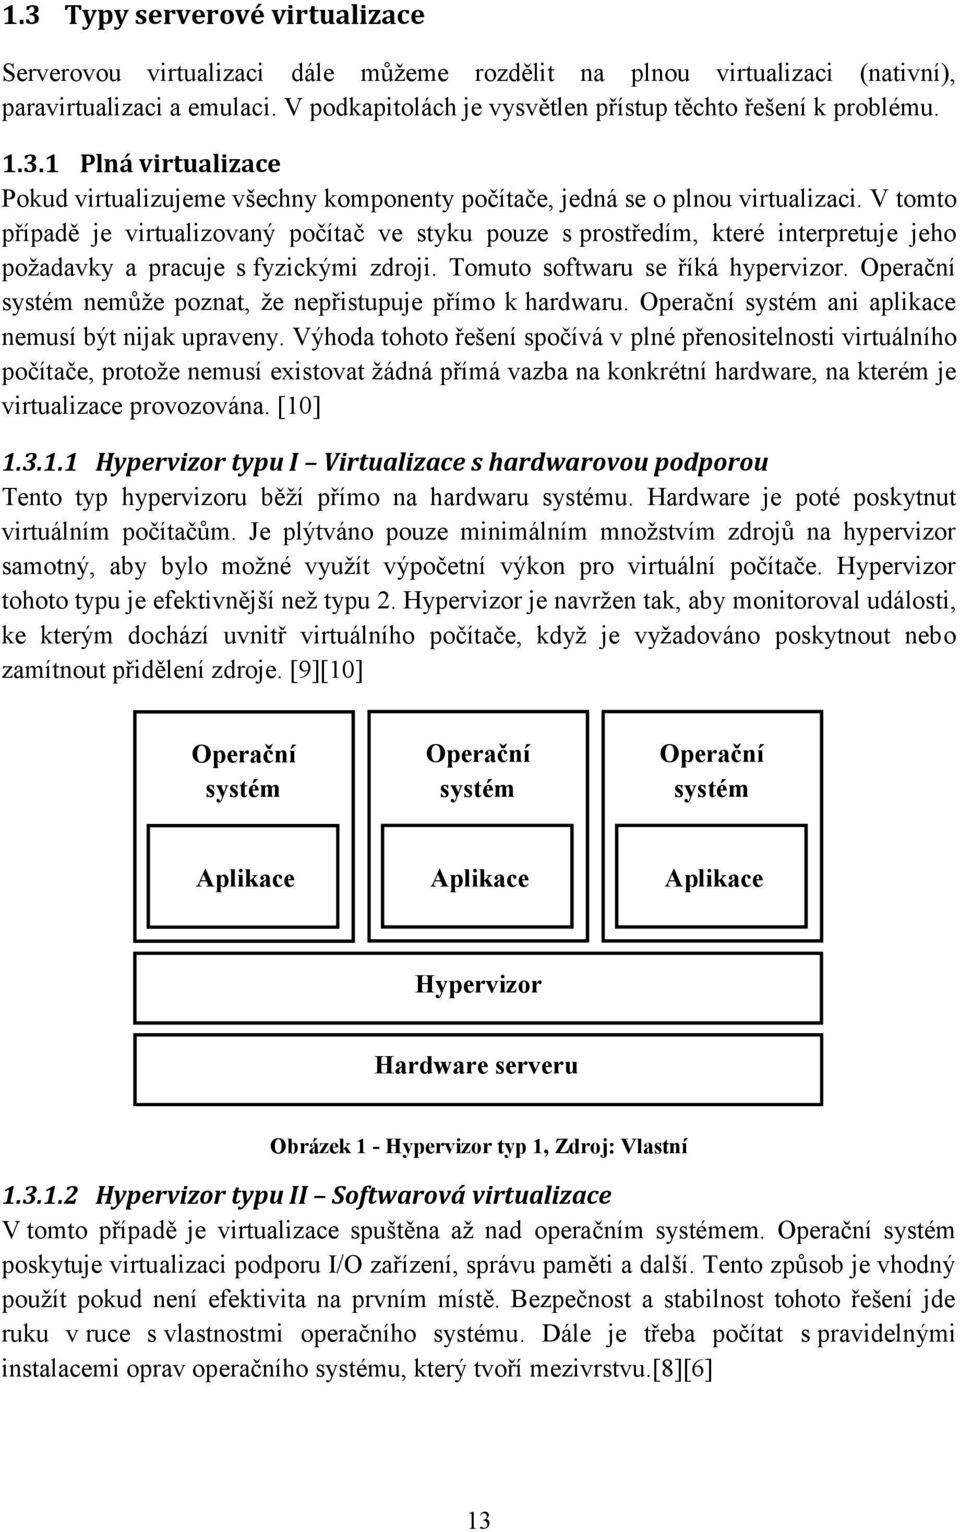 V tomto případě je virtualizovaný počítač ve styku pouze s prostředím, které interpretuje jeho požadavky a pracuje s fyzickými zdroji. Tomuto softwaru se říká hypervizor.